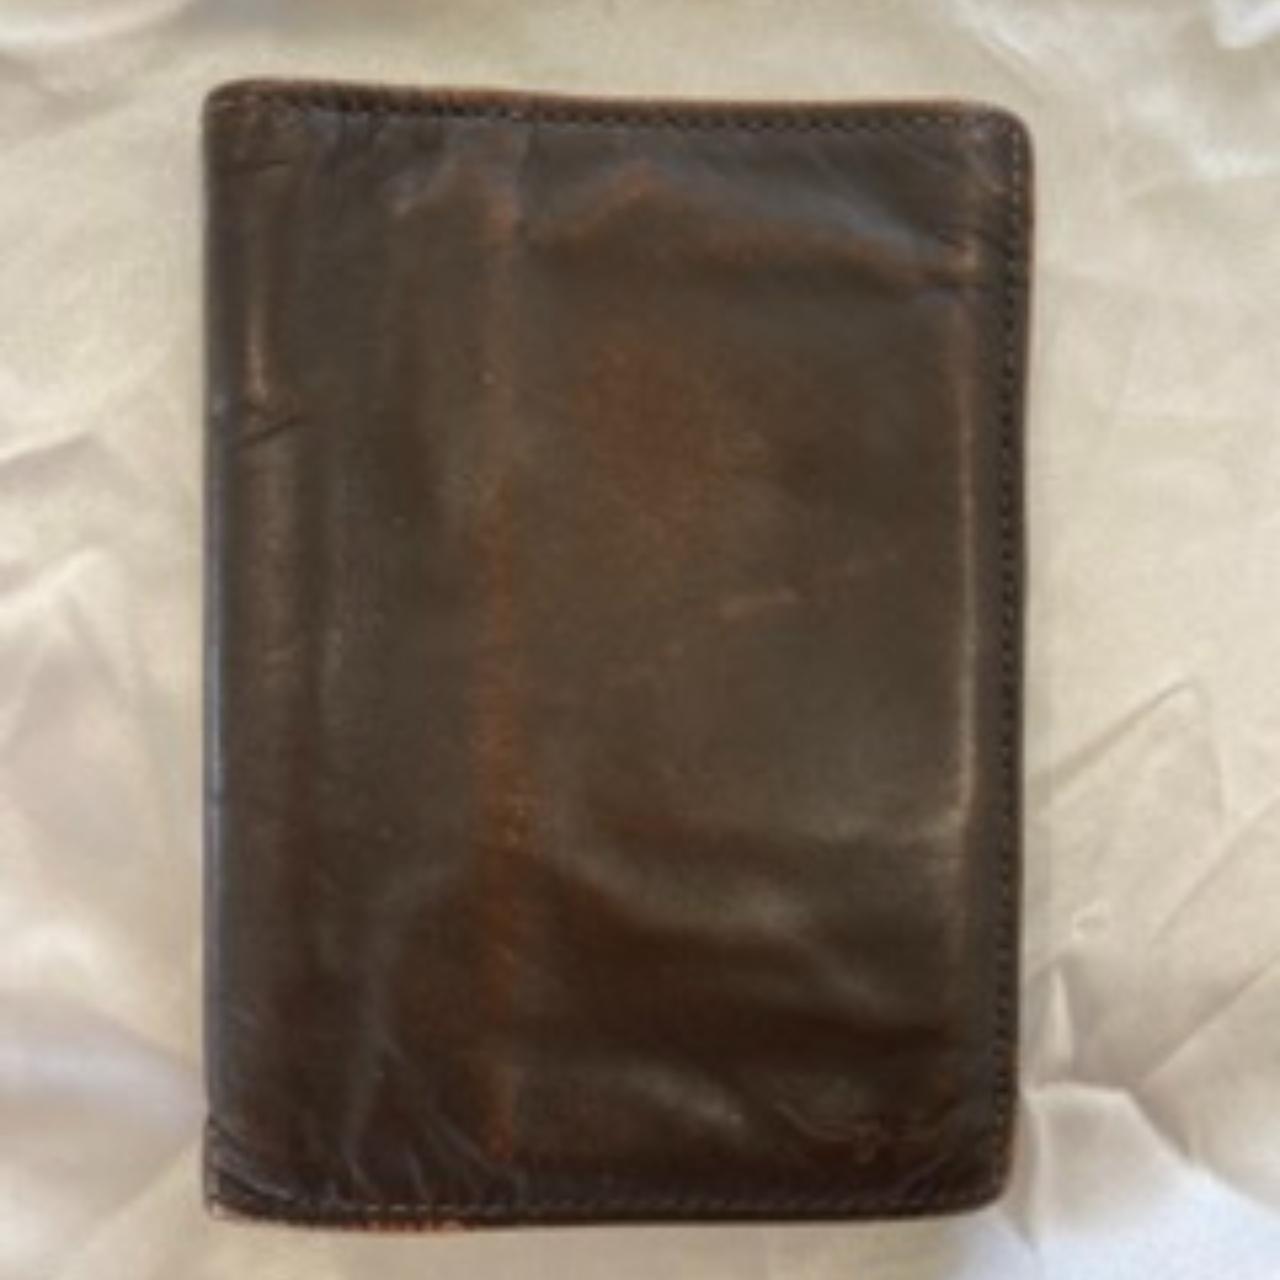 R.M Williams genuine leather wallet/cardholder ... - Depop